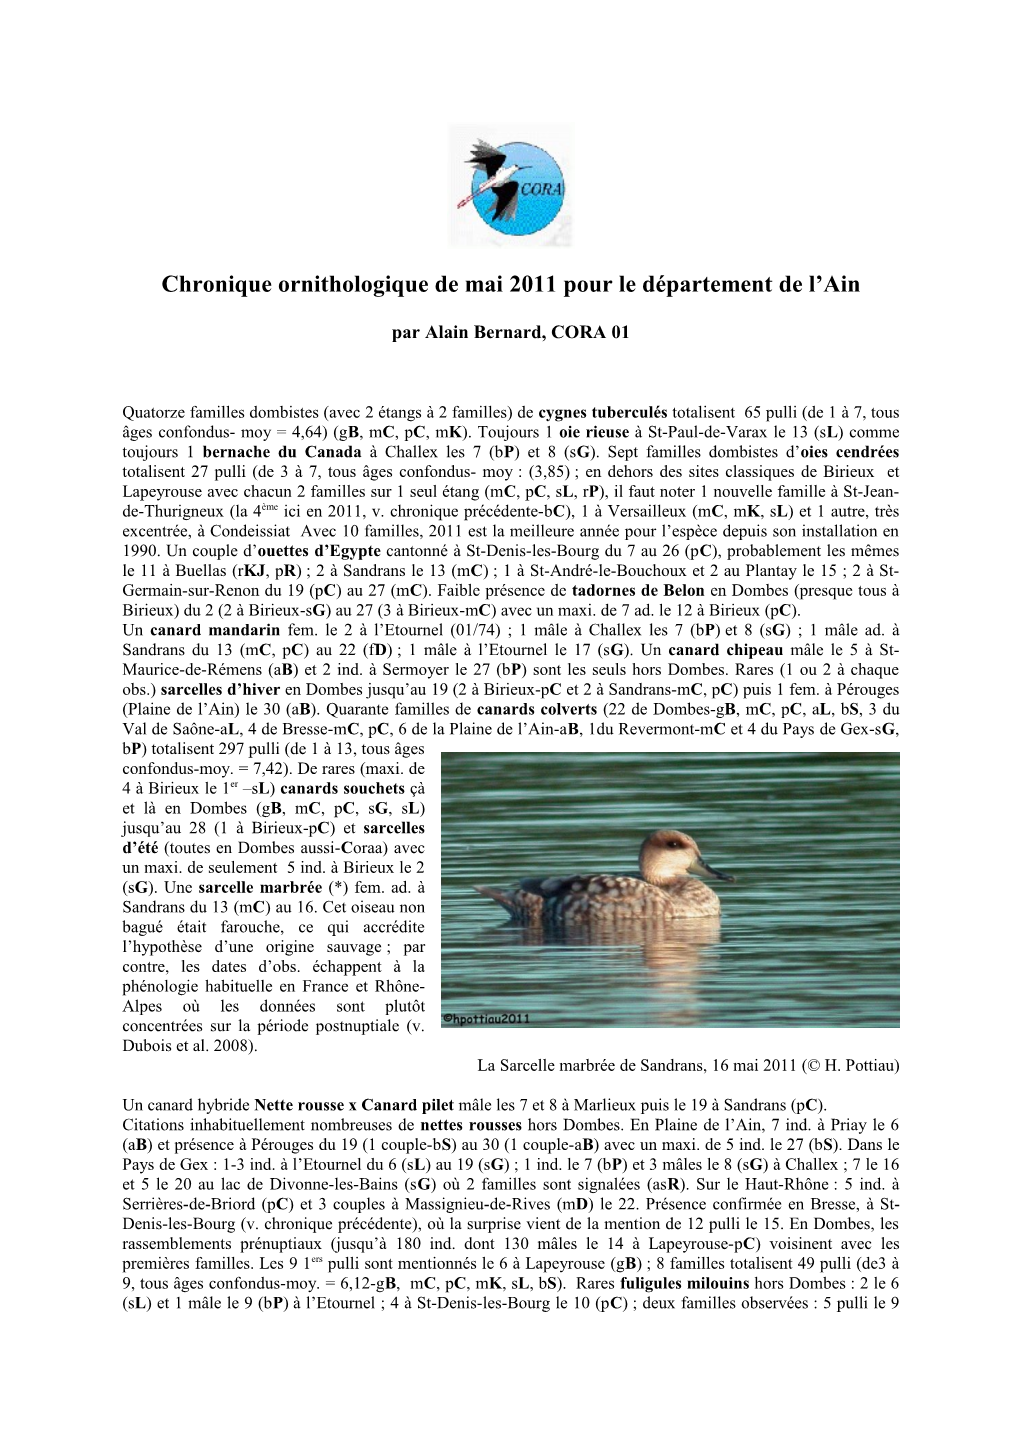 Chronique Ornithologique De Mai 2011 Pour Le Département De L’Ain